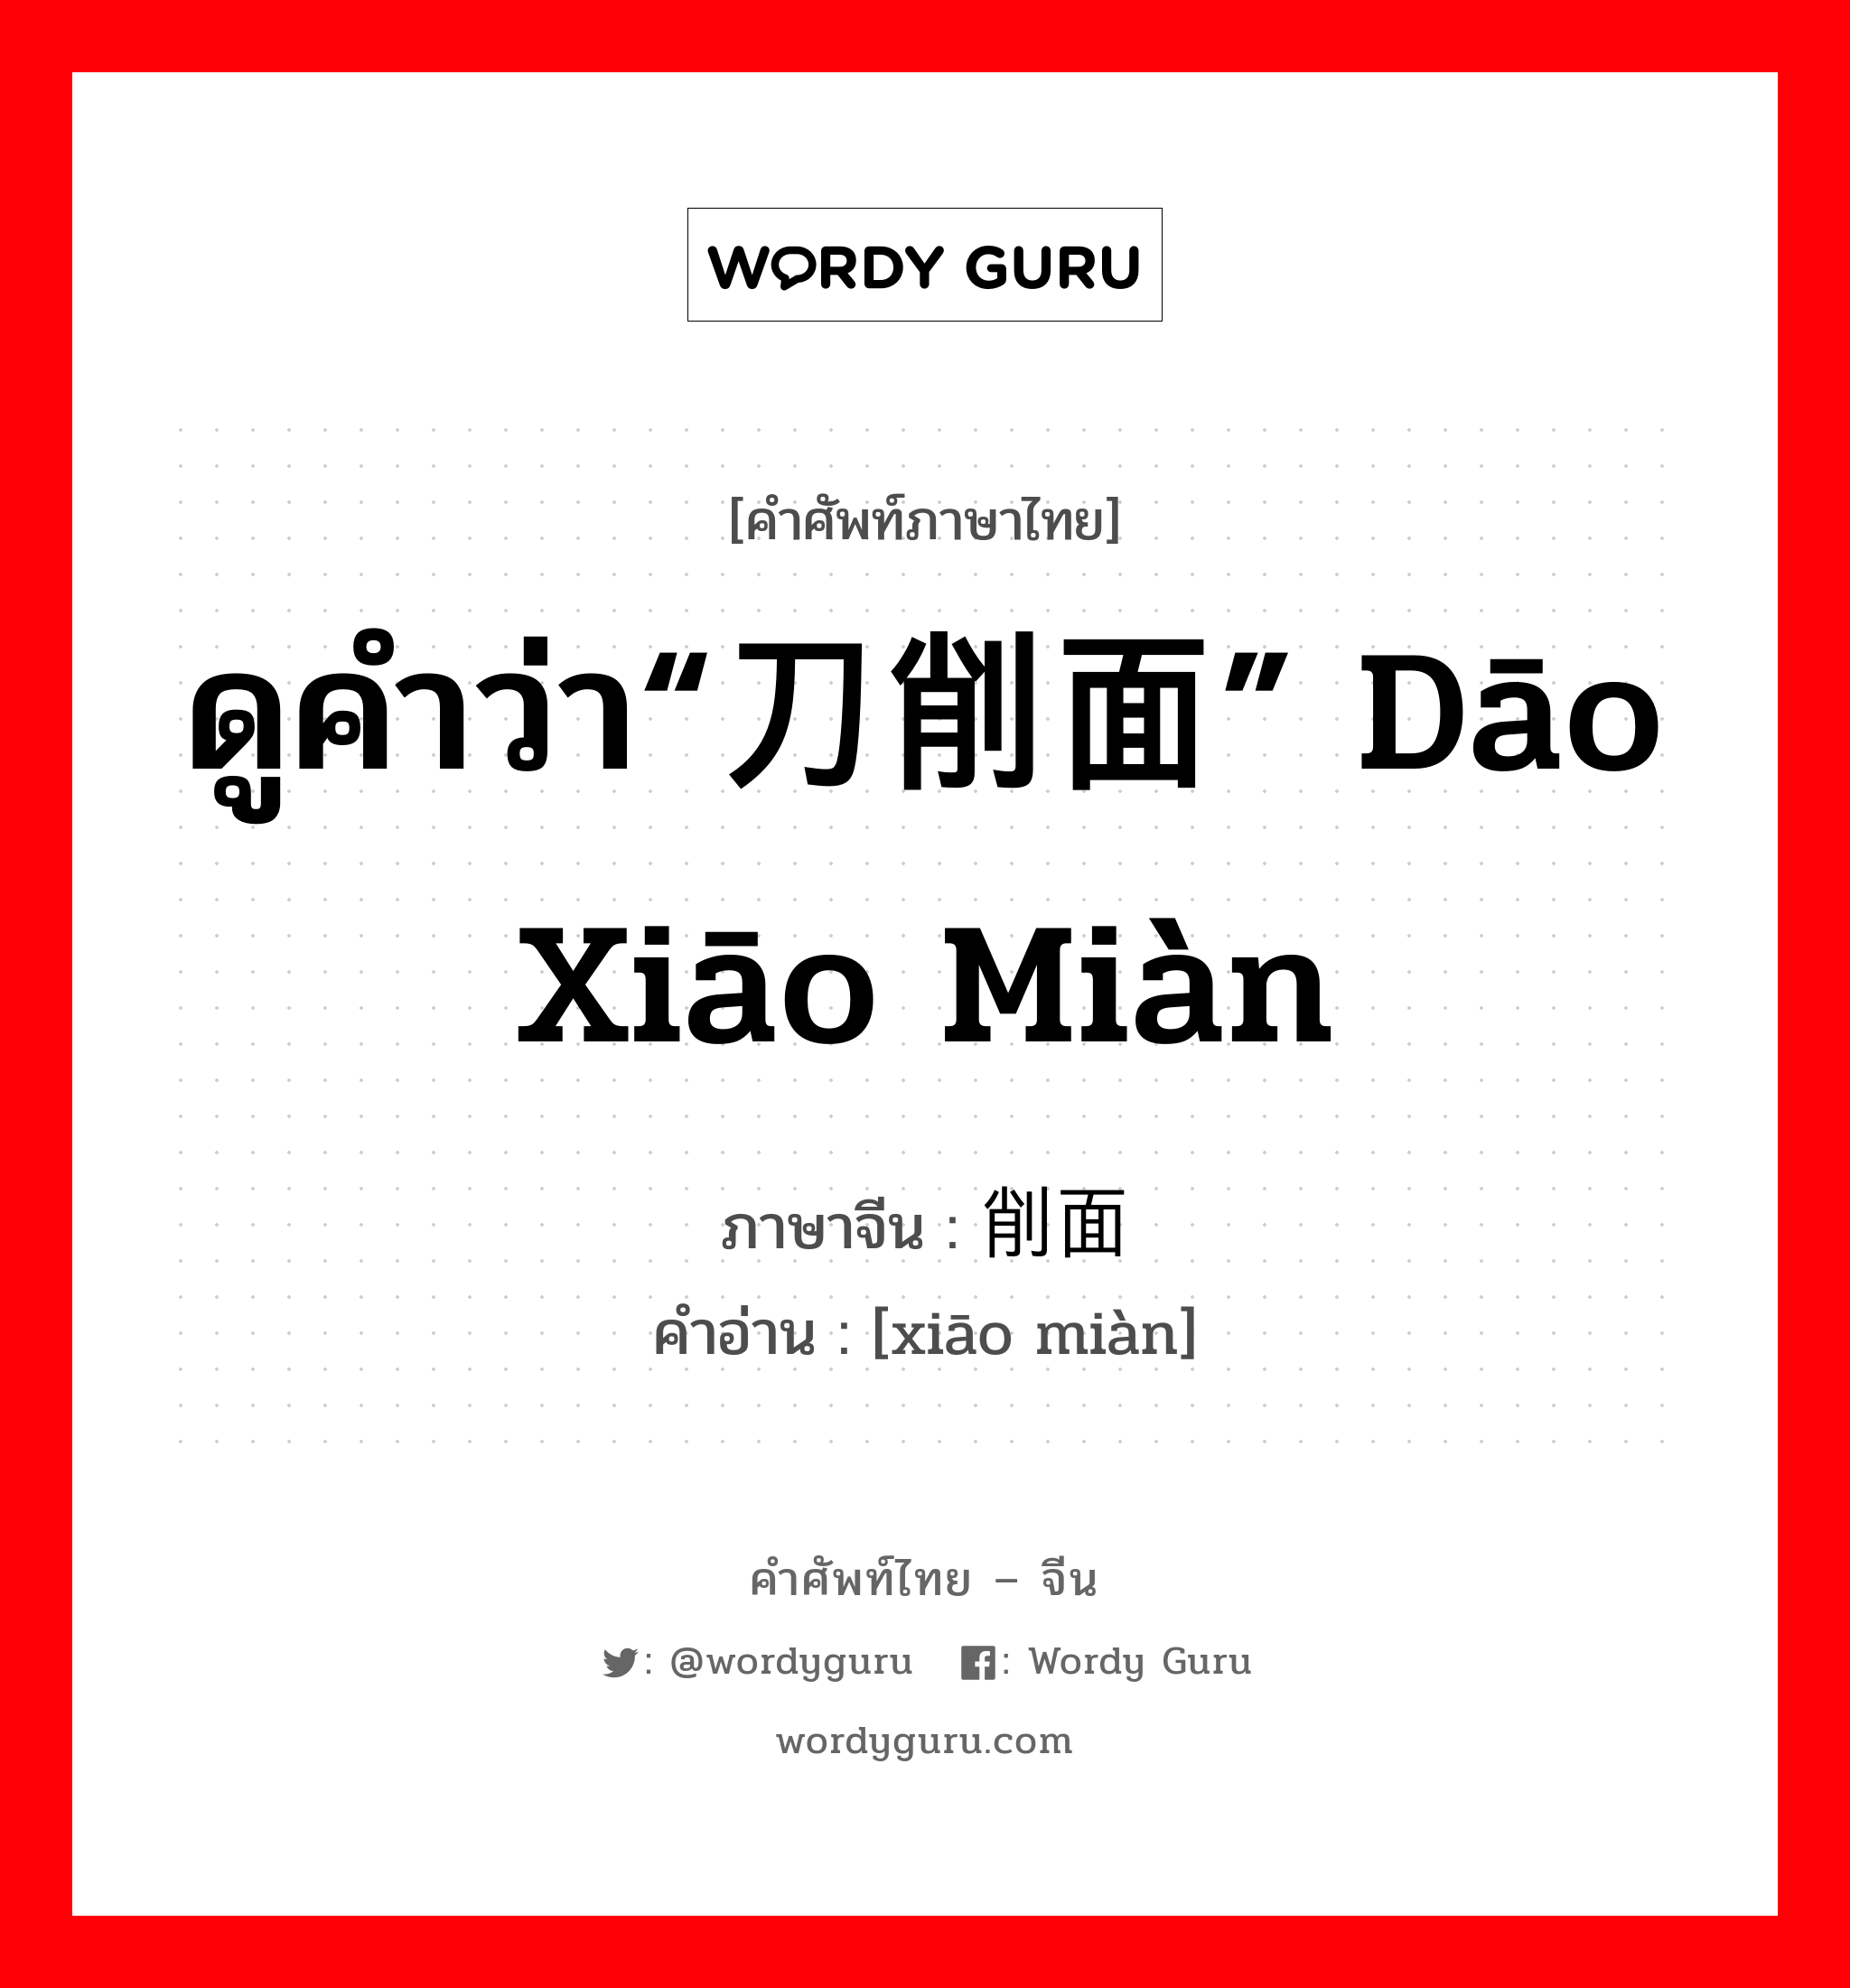 ดูคำว่า“刀削面” dāo xiāo miàn ภาษาจีนคืออะไร, คำศัพท์ภาษาไทย - จีน ดูคำว่า“刀削面” dāo xiāo miàn ภาษาจีน 削面 คำอ่าน [xiāo miàn]